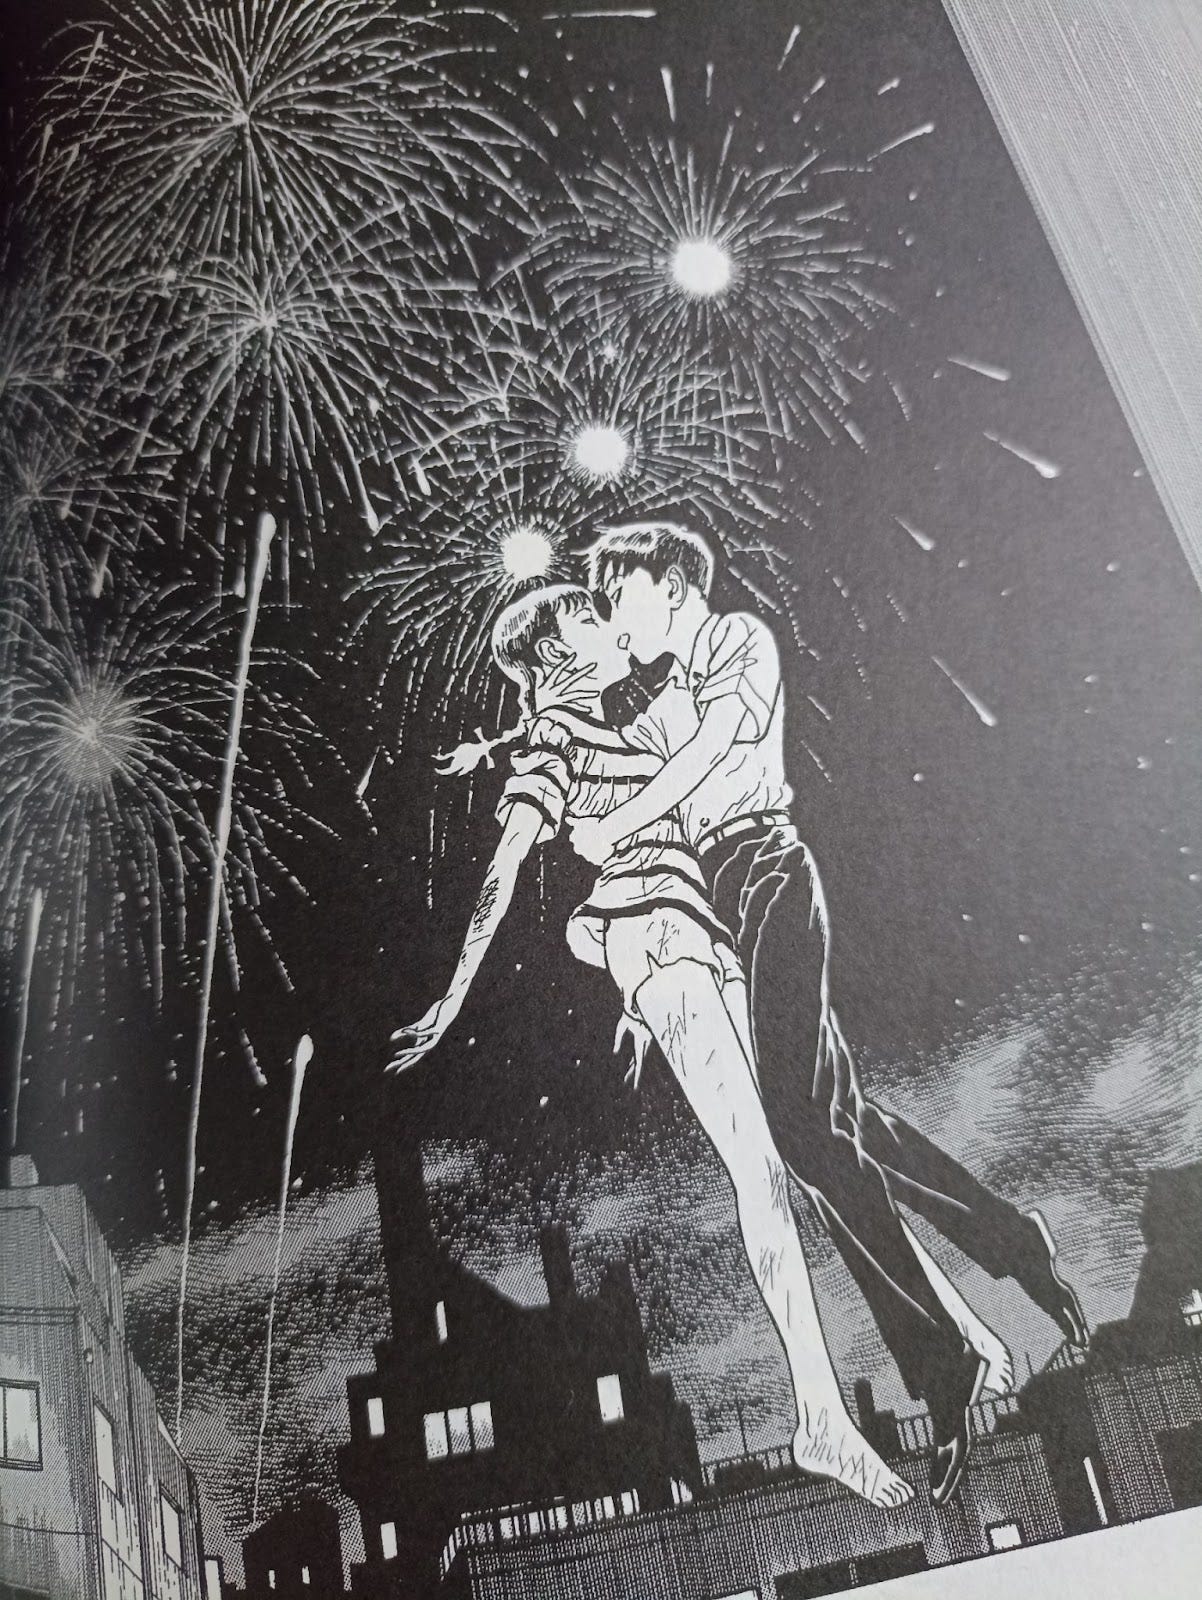 Hermosa imagen donde Mori y Luna se besan, suspendidos en el firmamento por sus poderes vampíricos, mientras tras ellos explotan fuegos artificiales.